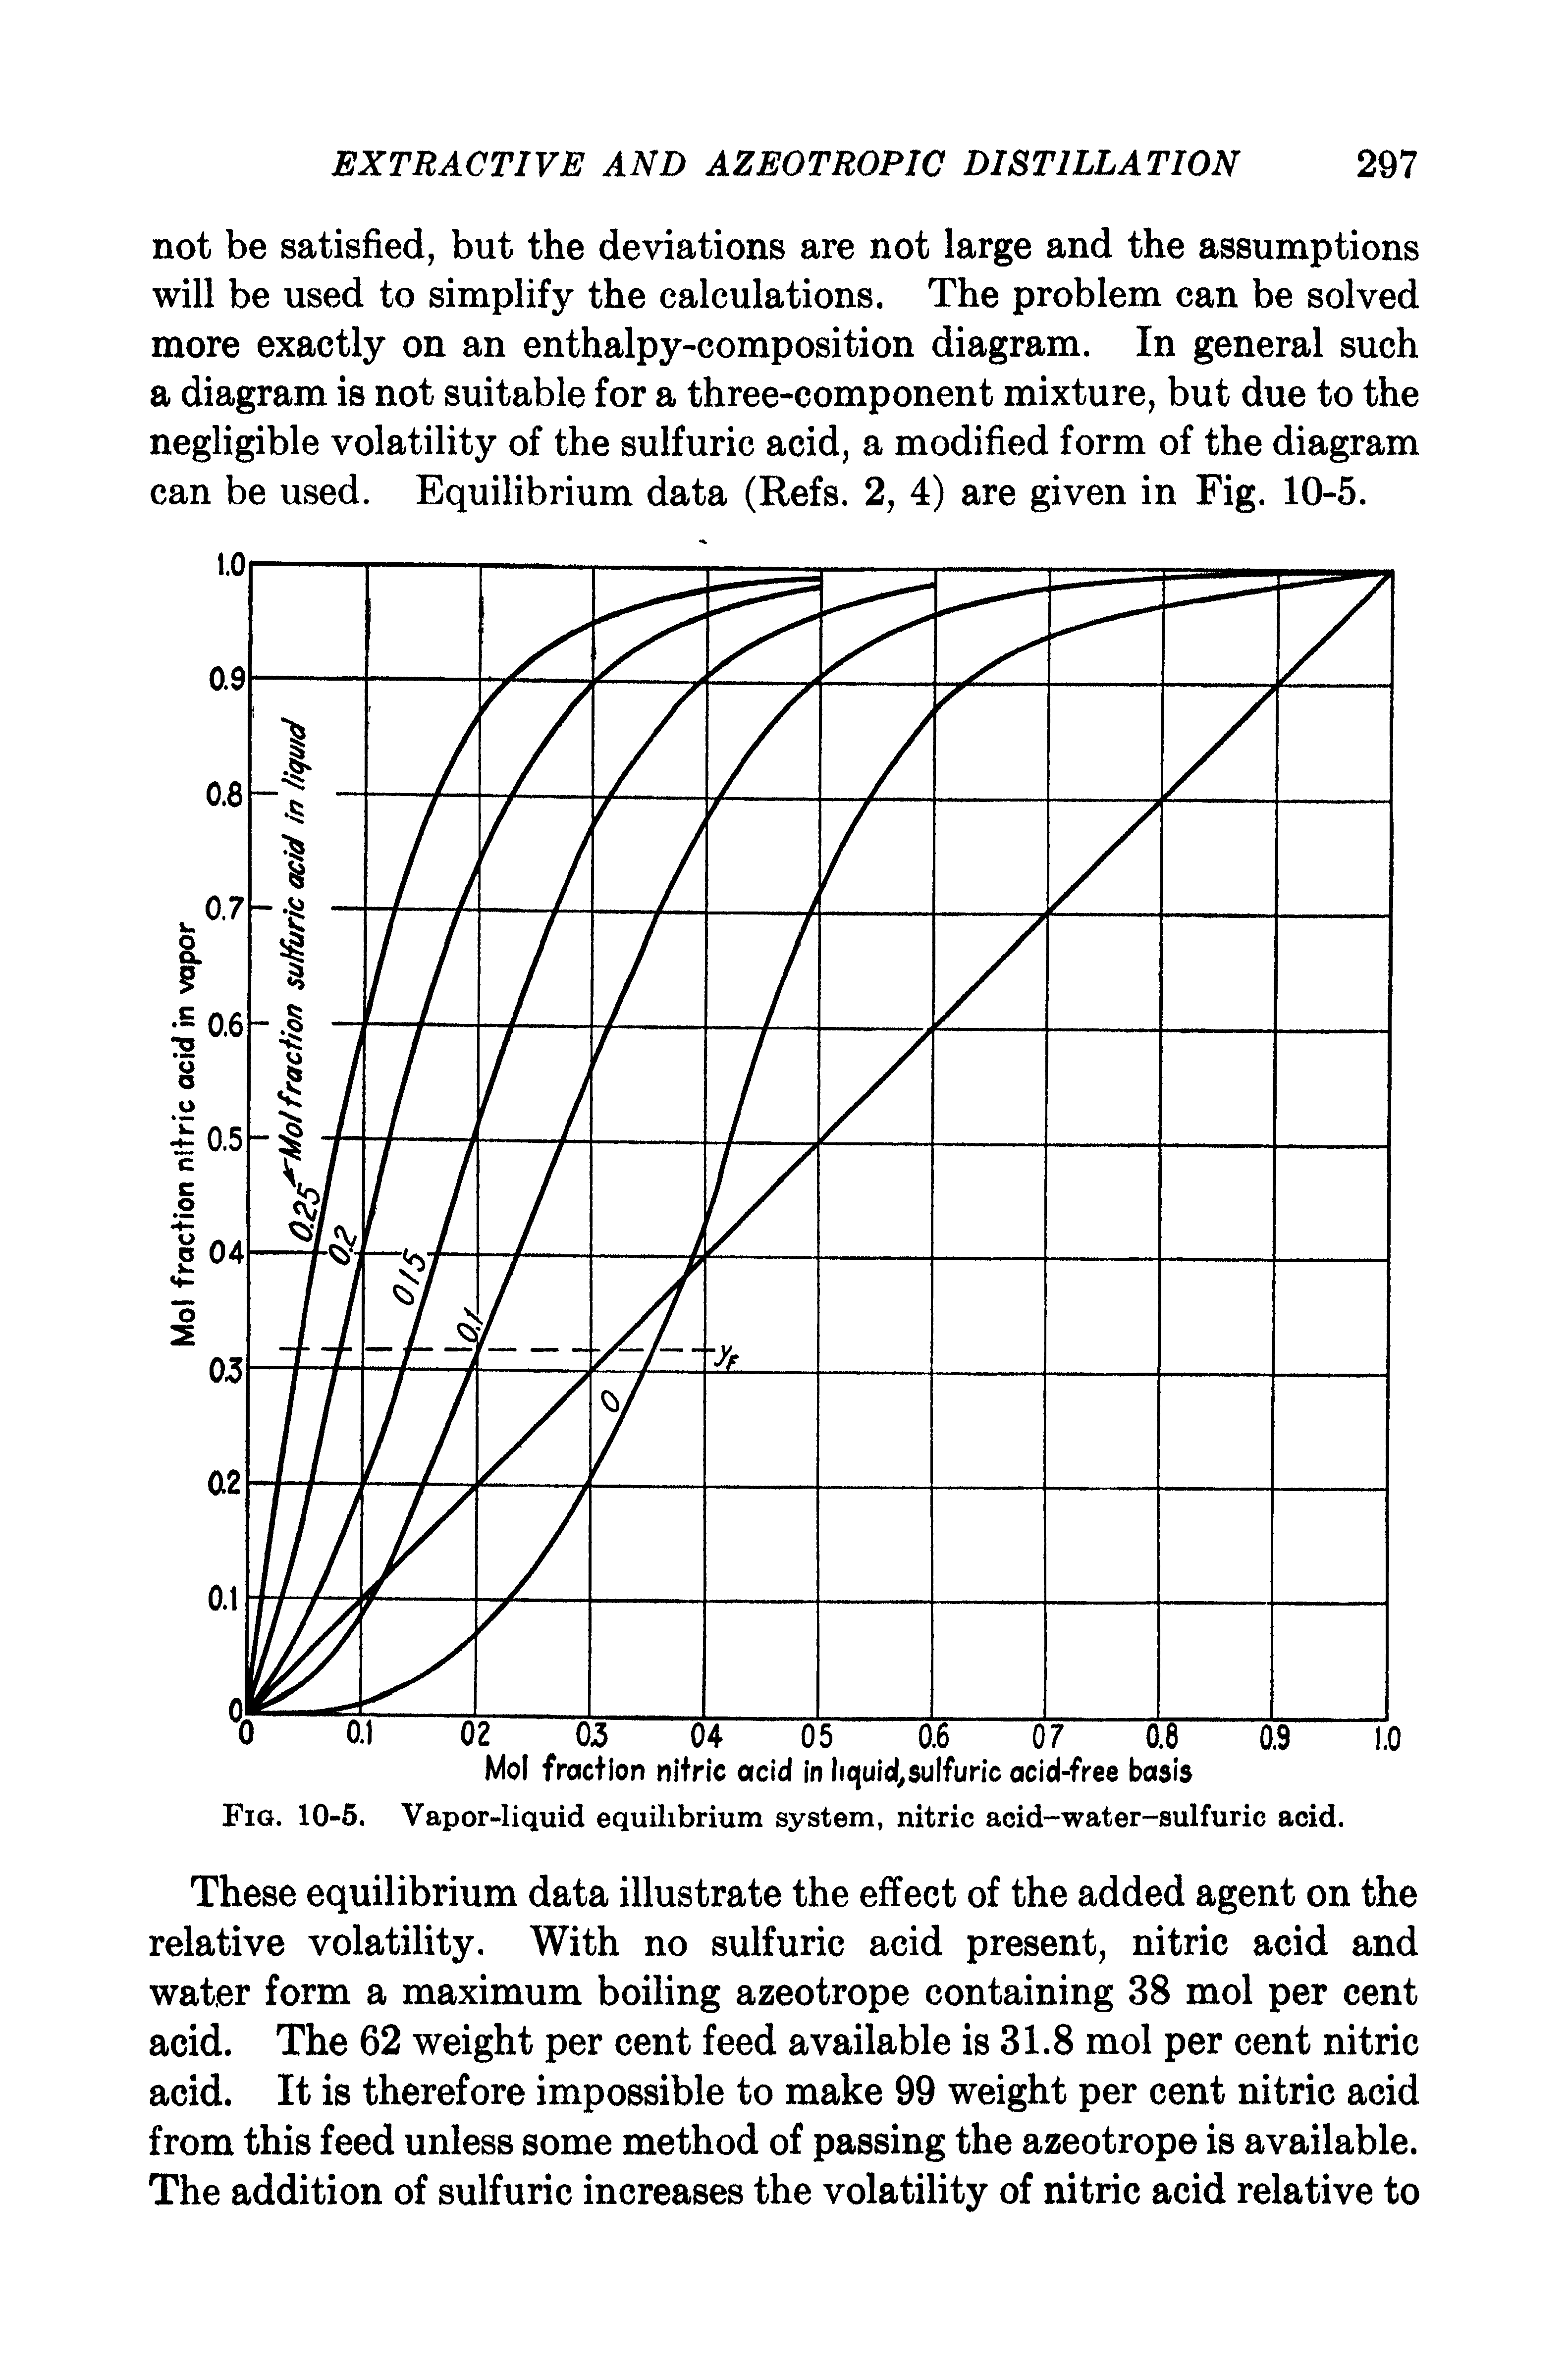 Fig. 10-6. Vapor-liquid equilibrium system, nitric acid-water-sulfuric acid.